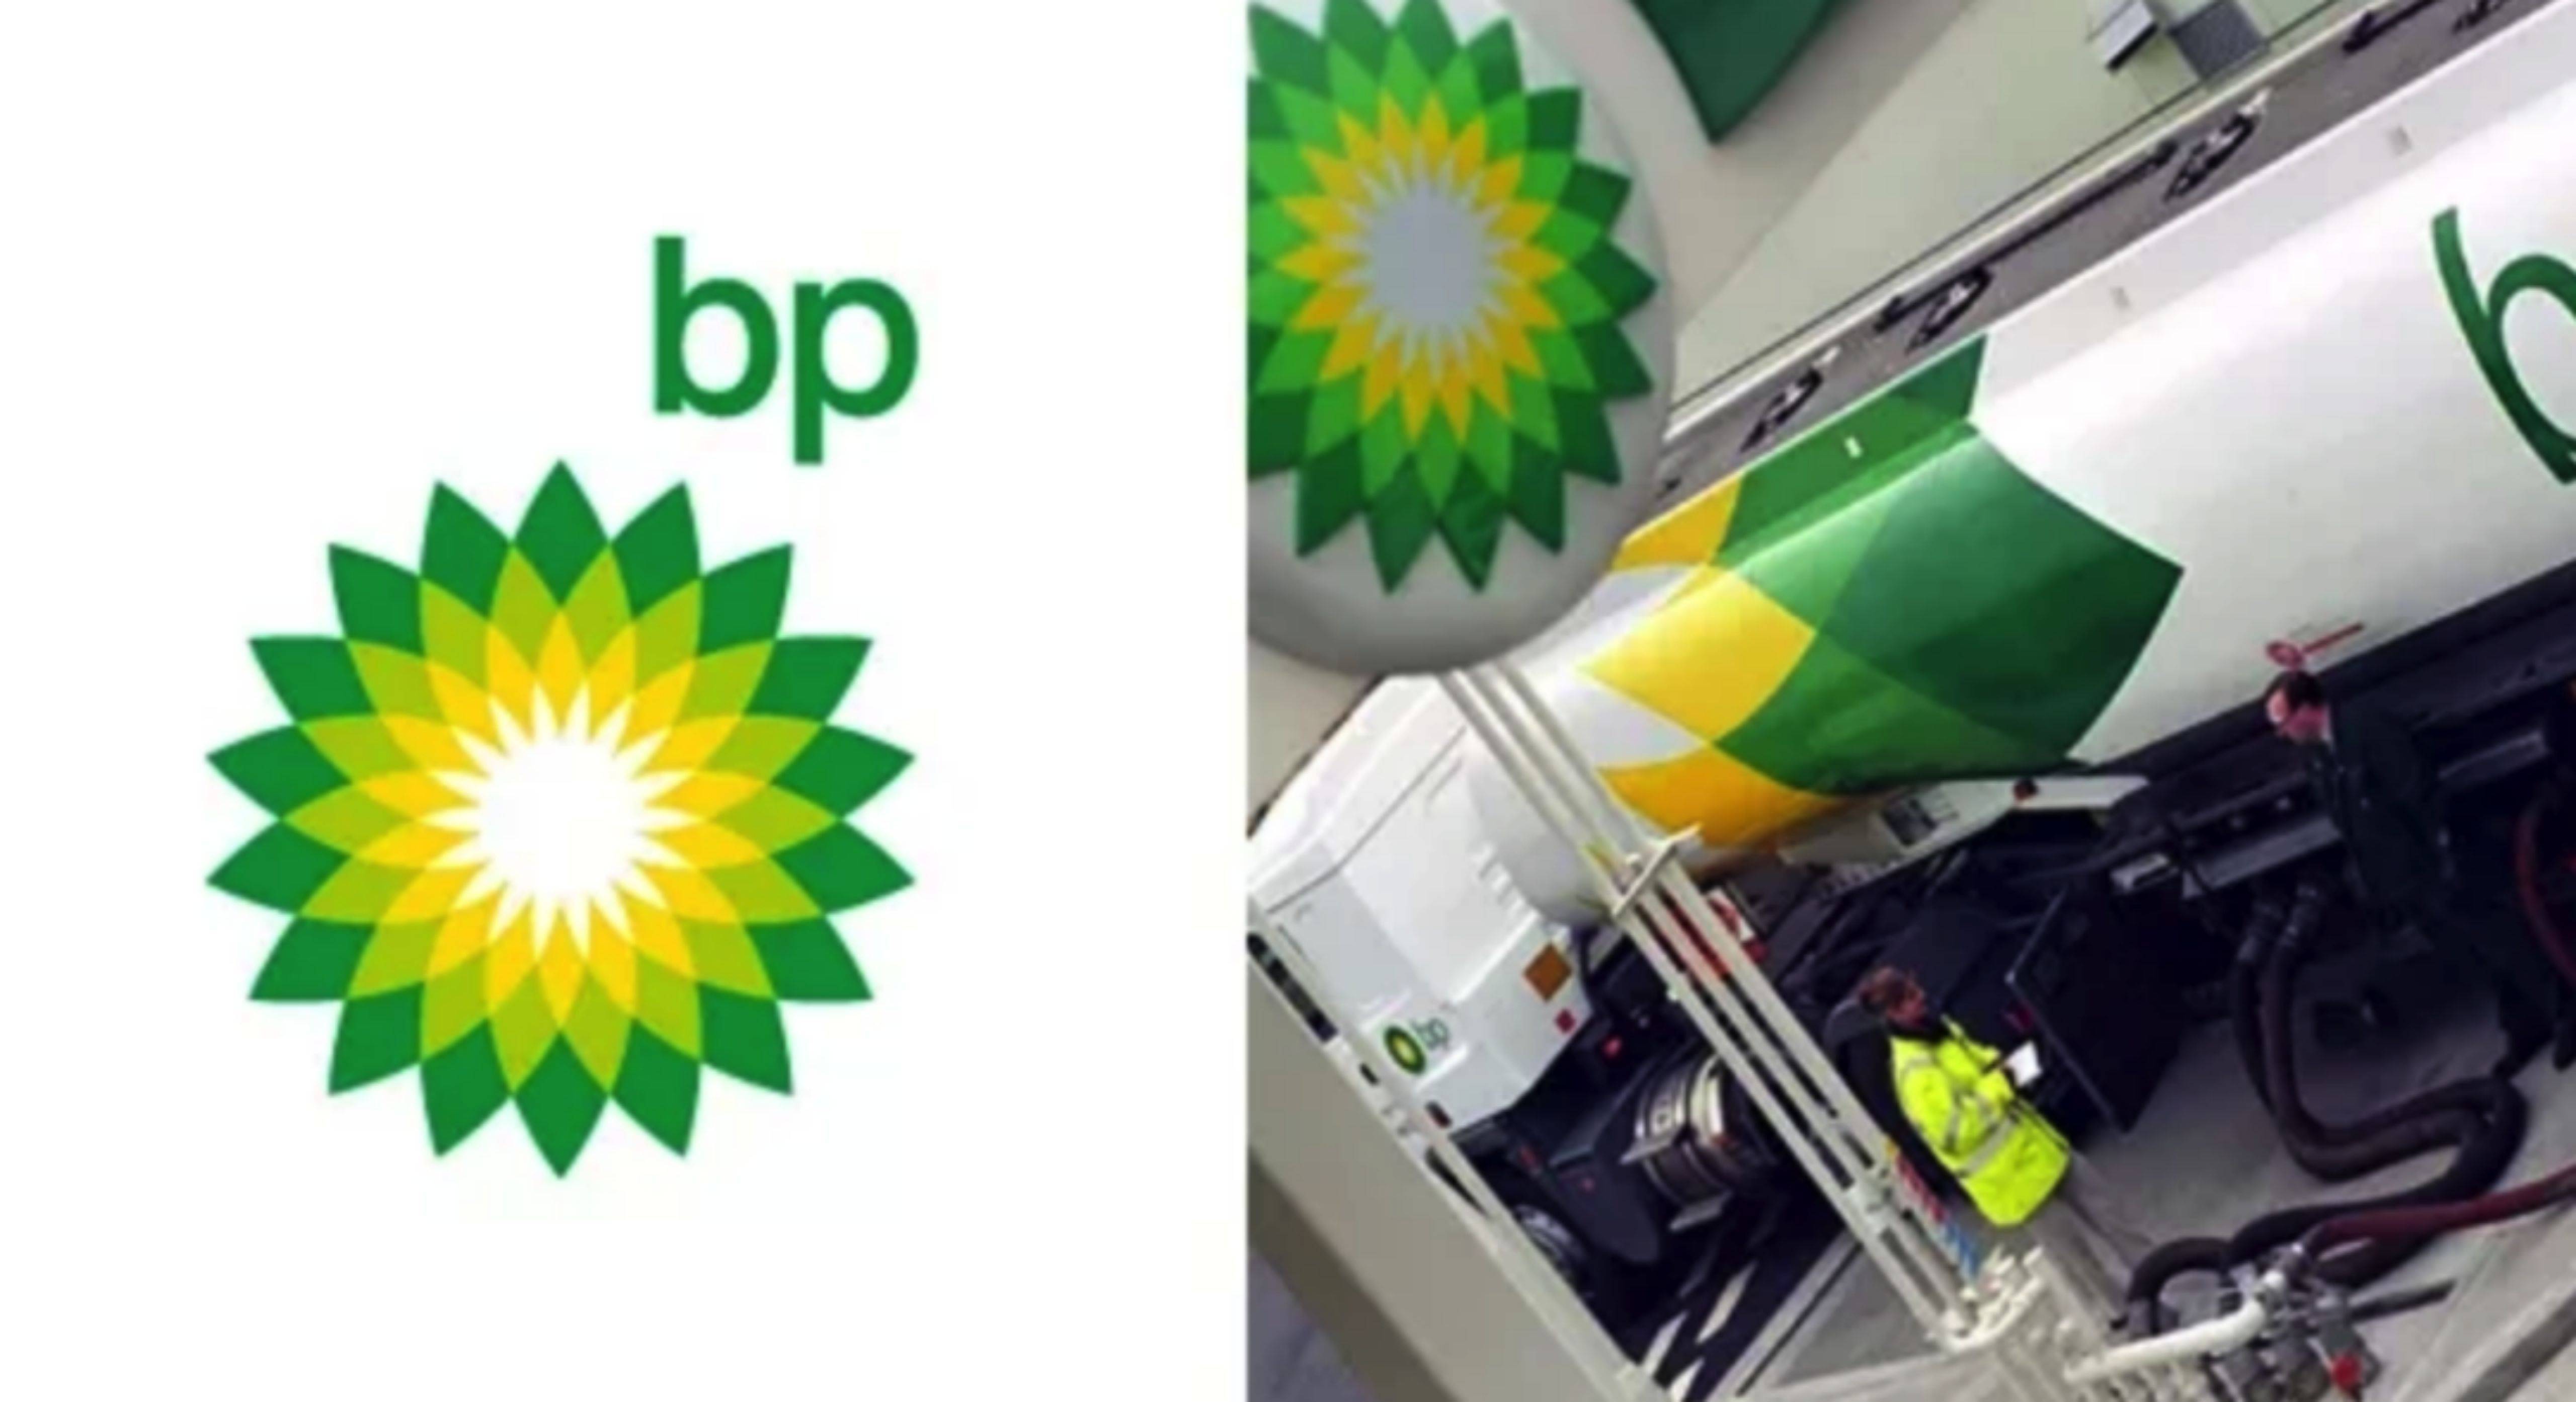 英国石油(bp)logo设计:2亿美刀小米logo升级:200万rmb英国广播公司